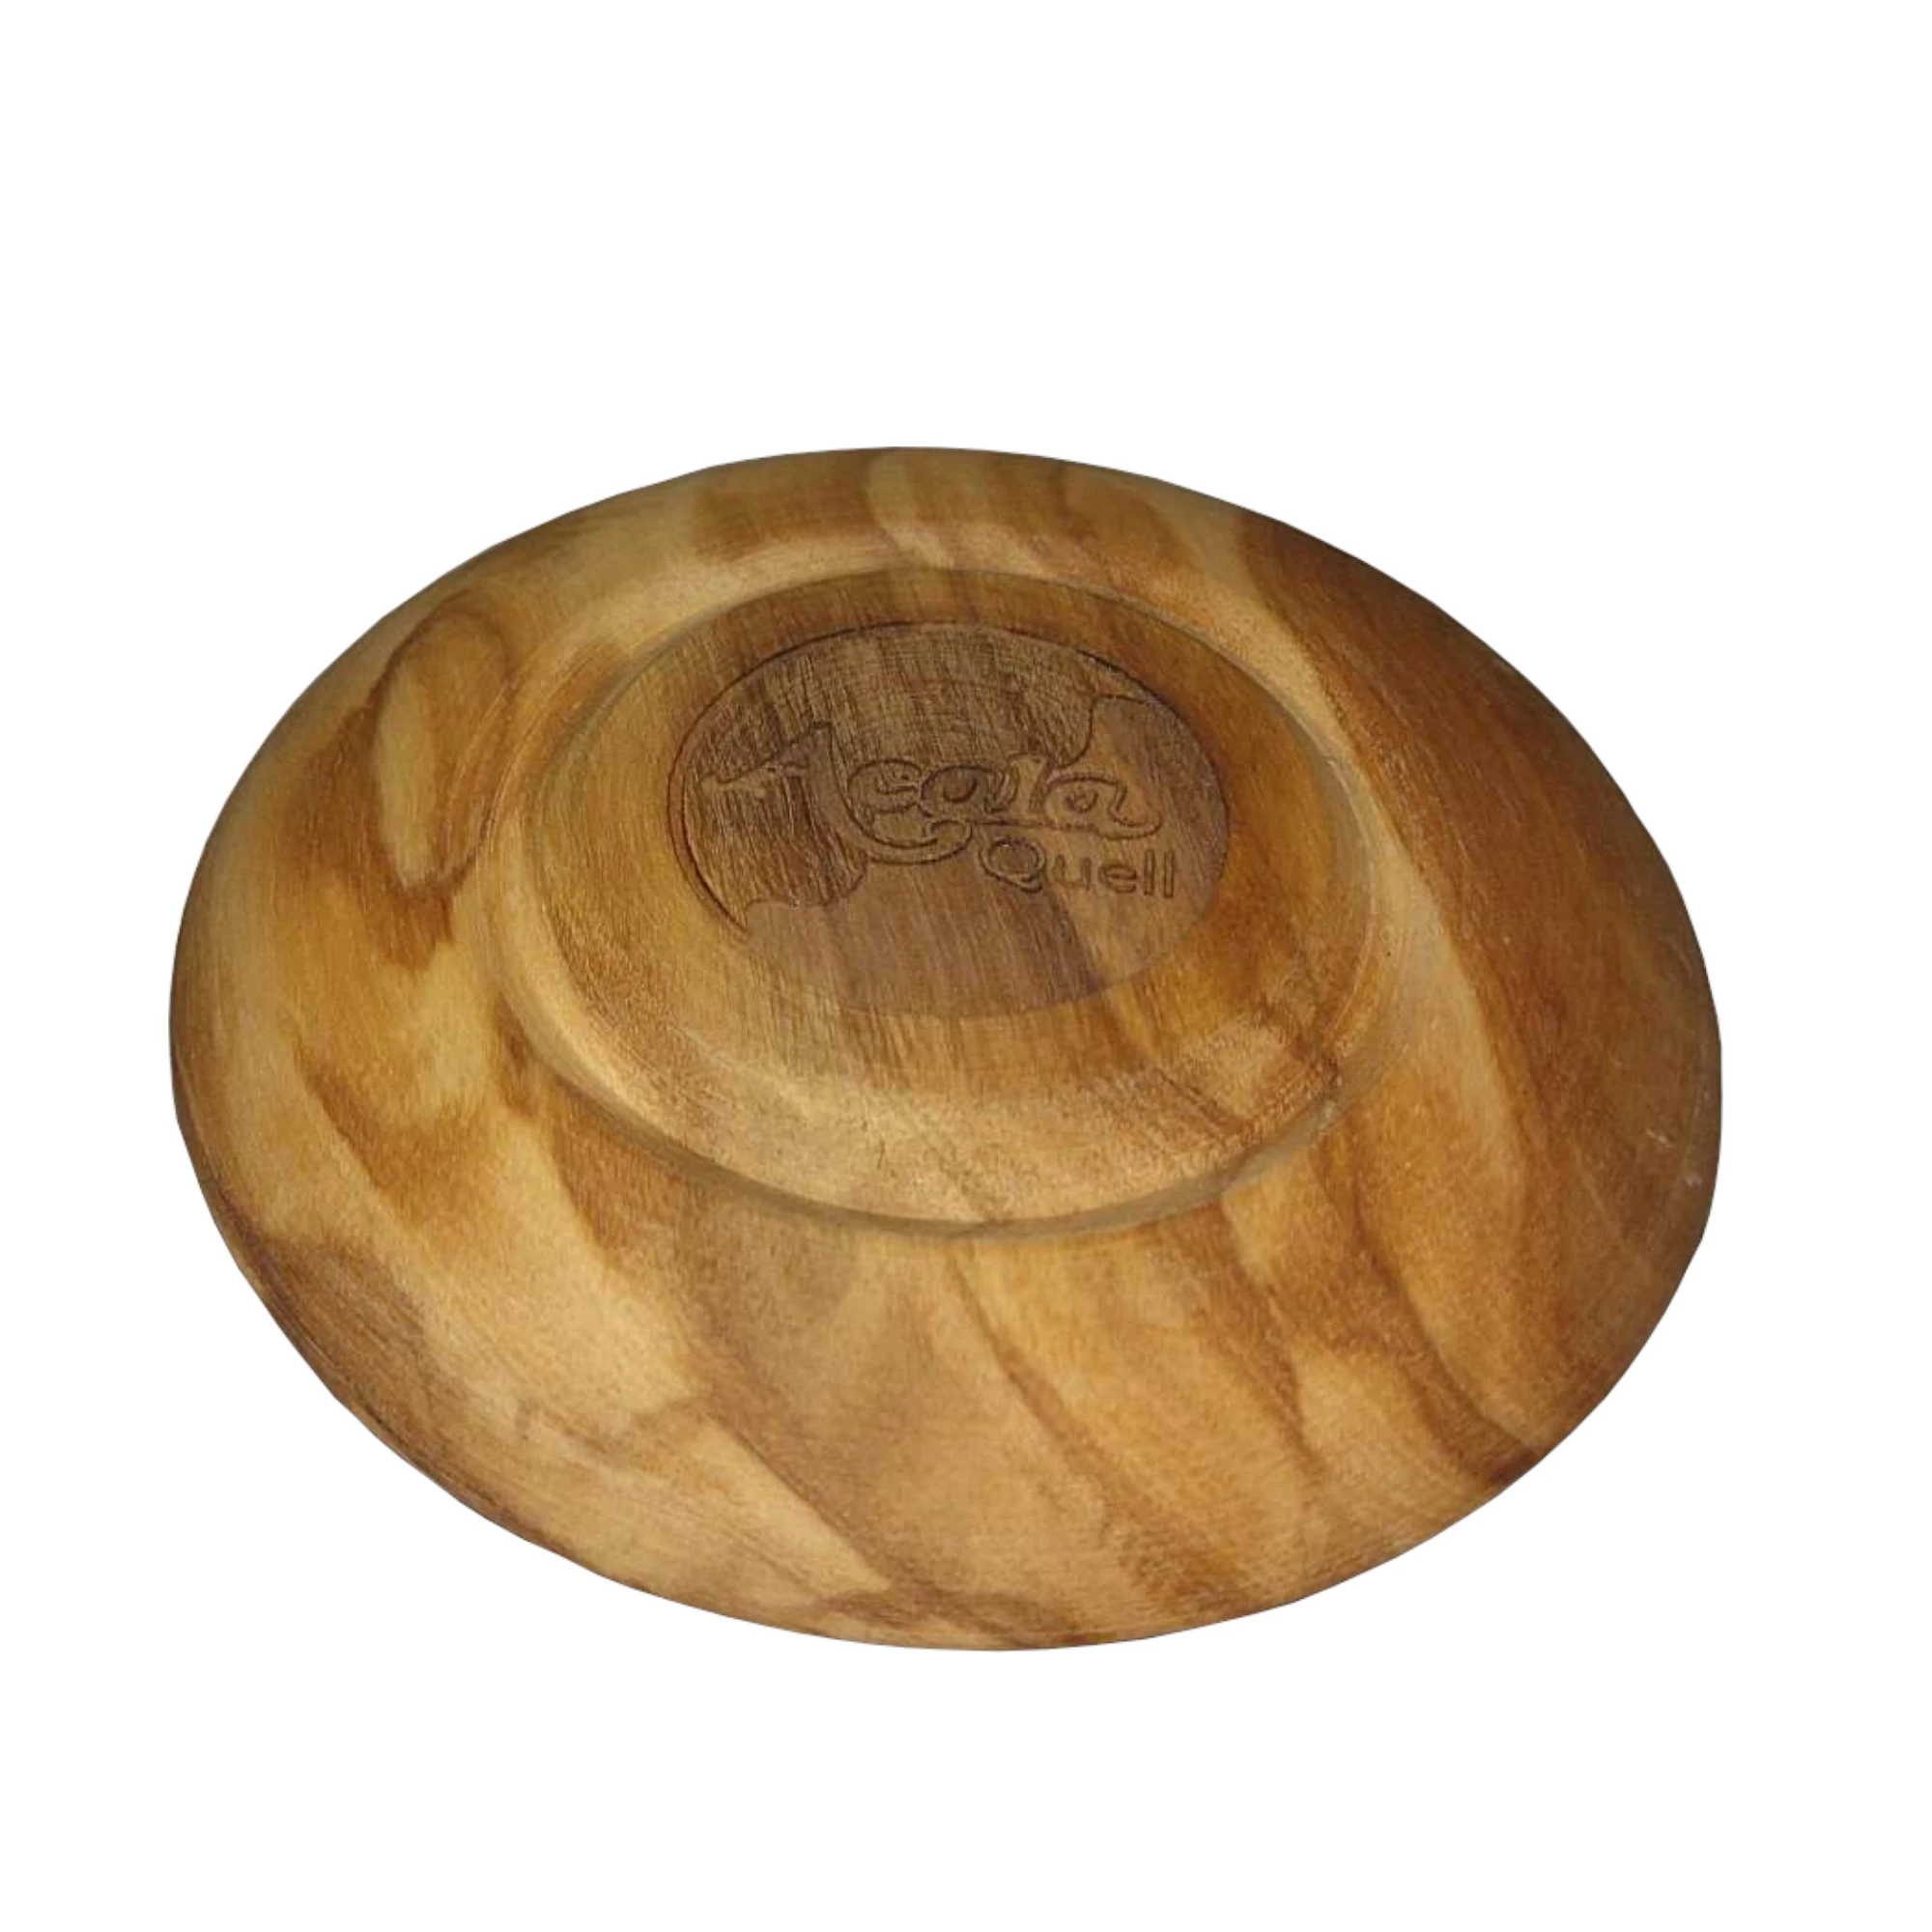 Zu sehen ist ein flacher Holzdeckel mit Acala Logo in Großaufnahme vor weißem Hintergrund. Das Bild zeigt den Deckel aus Olivenholz für den Cadus Krug von Acala.